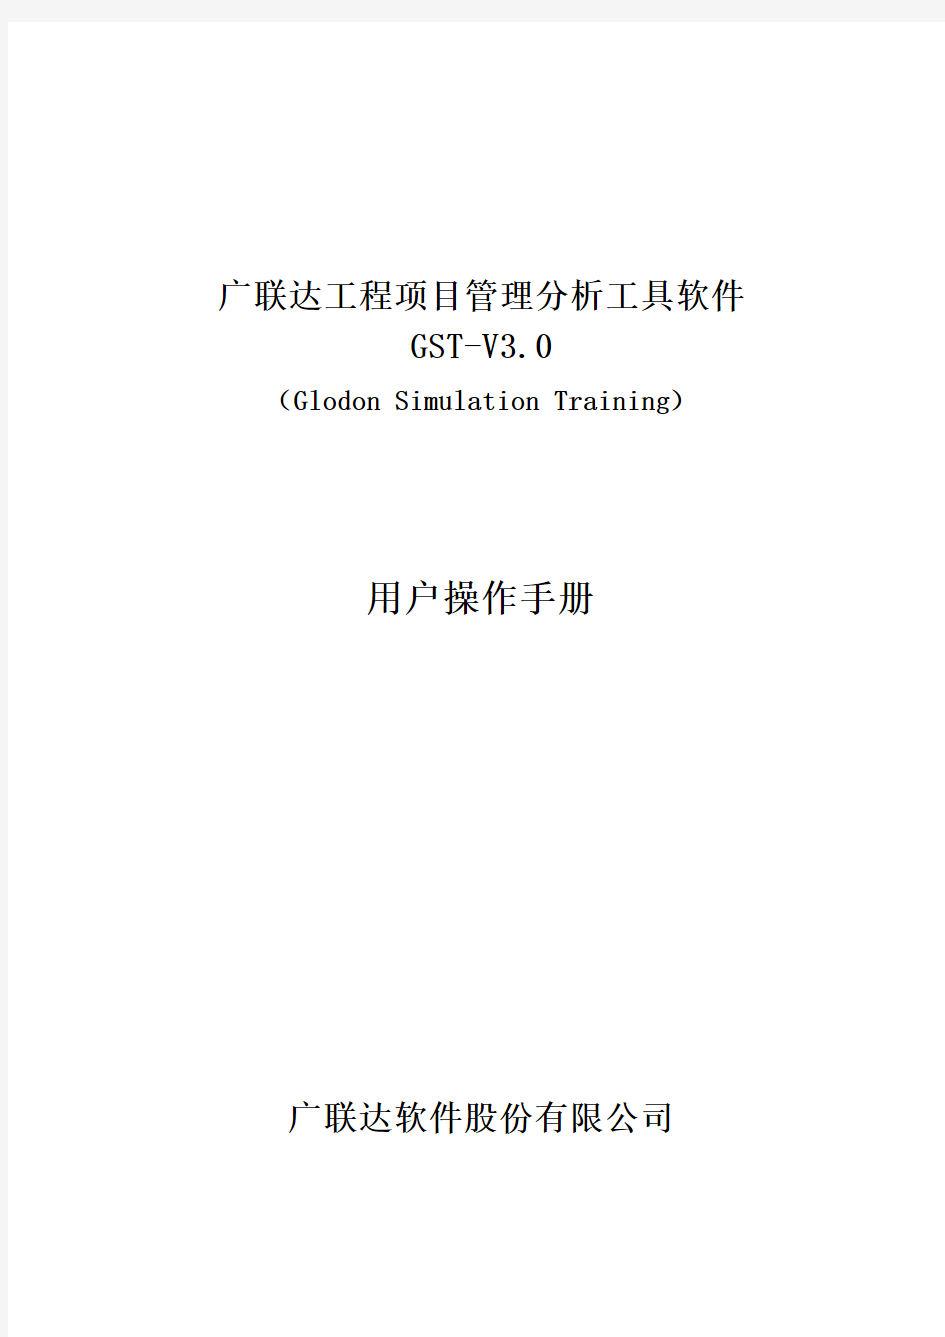 广联达工程项目管理分析工具软件gst-v3.用户操作手册